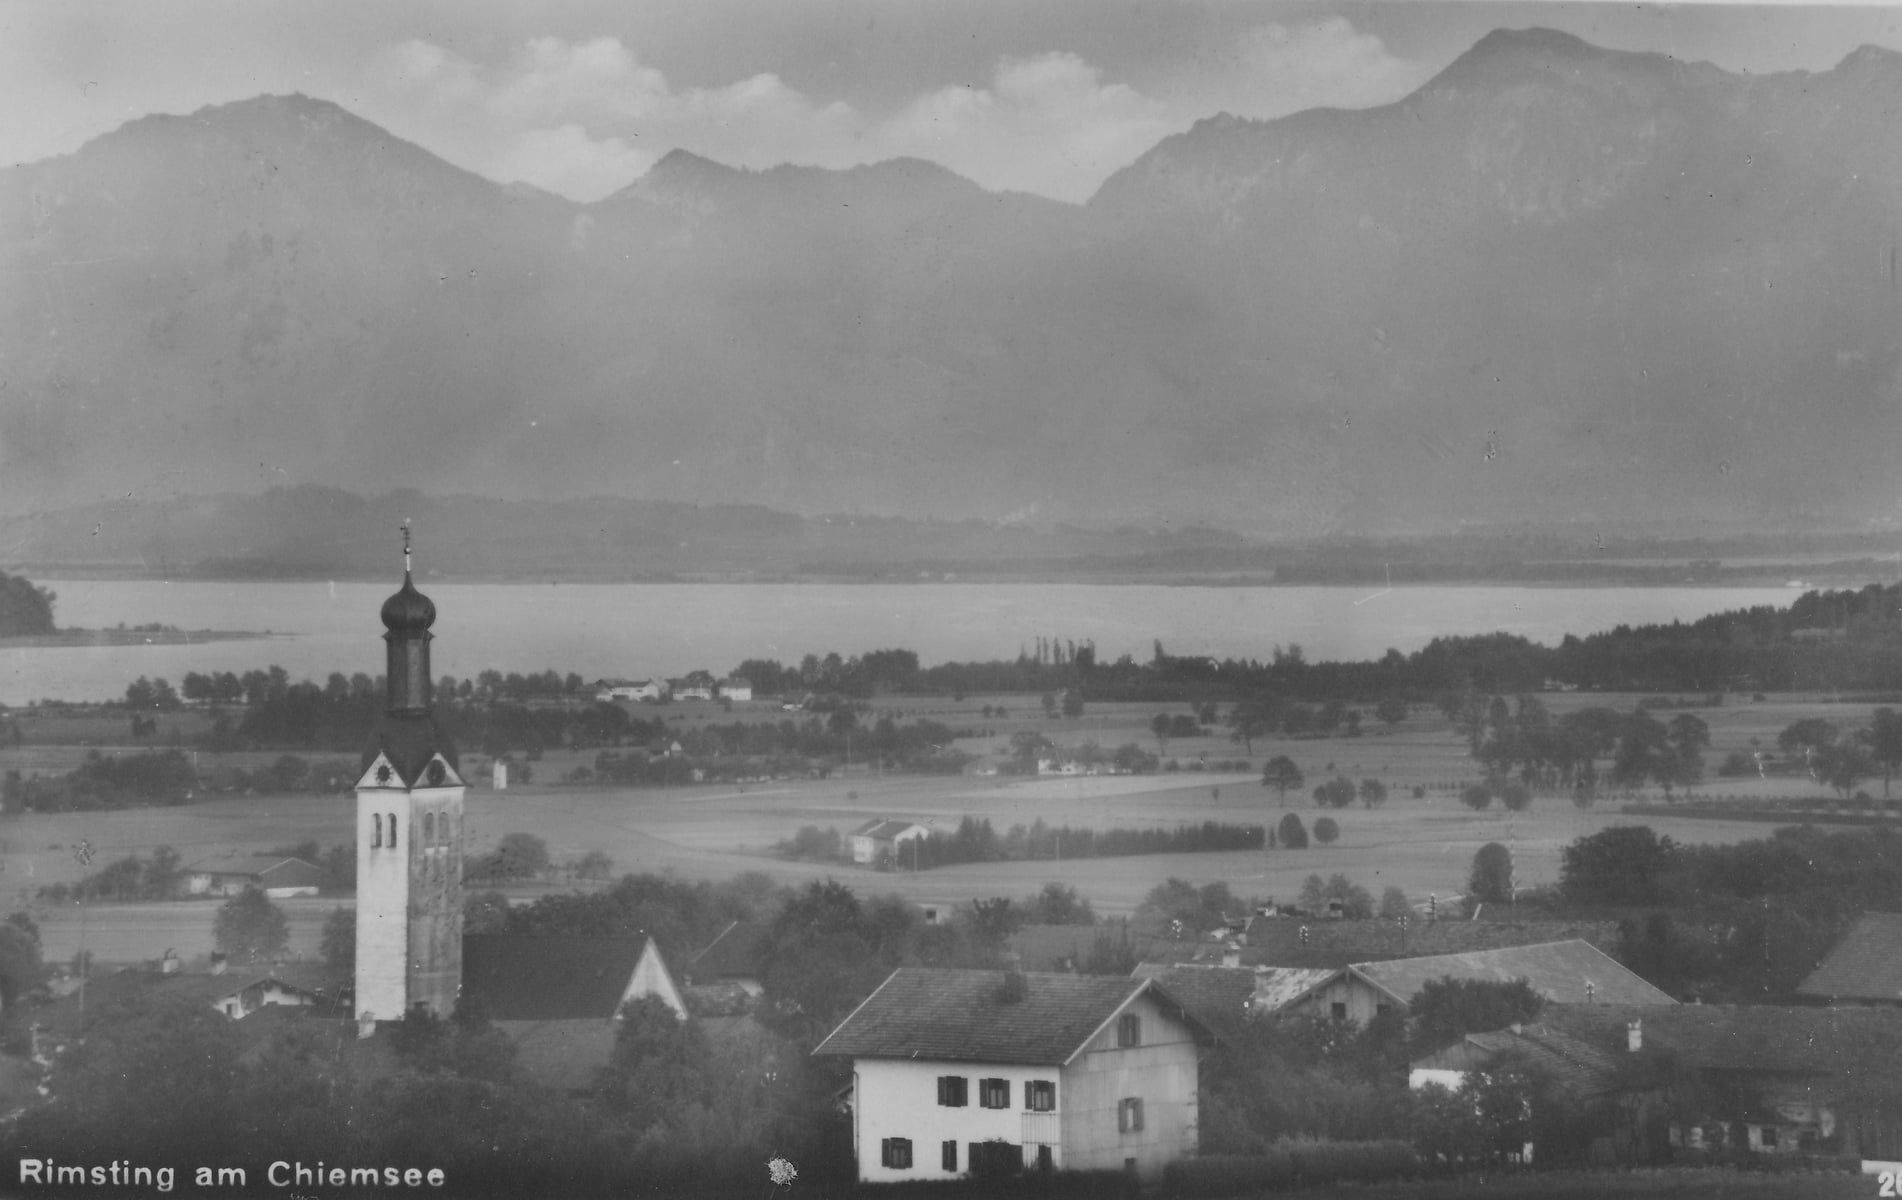 Schwarz-Weiss-Luftaufnahme von Rimsting mit Chiemsee und Bergen im Hintergrund